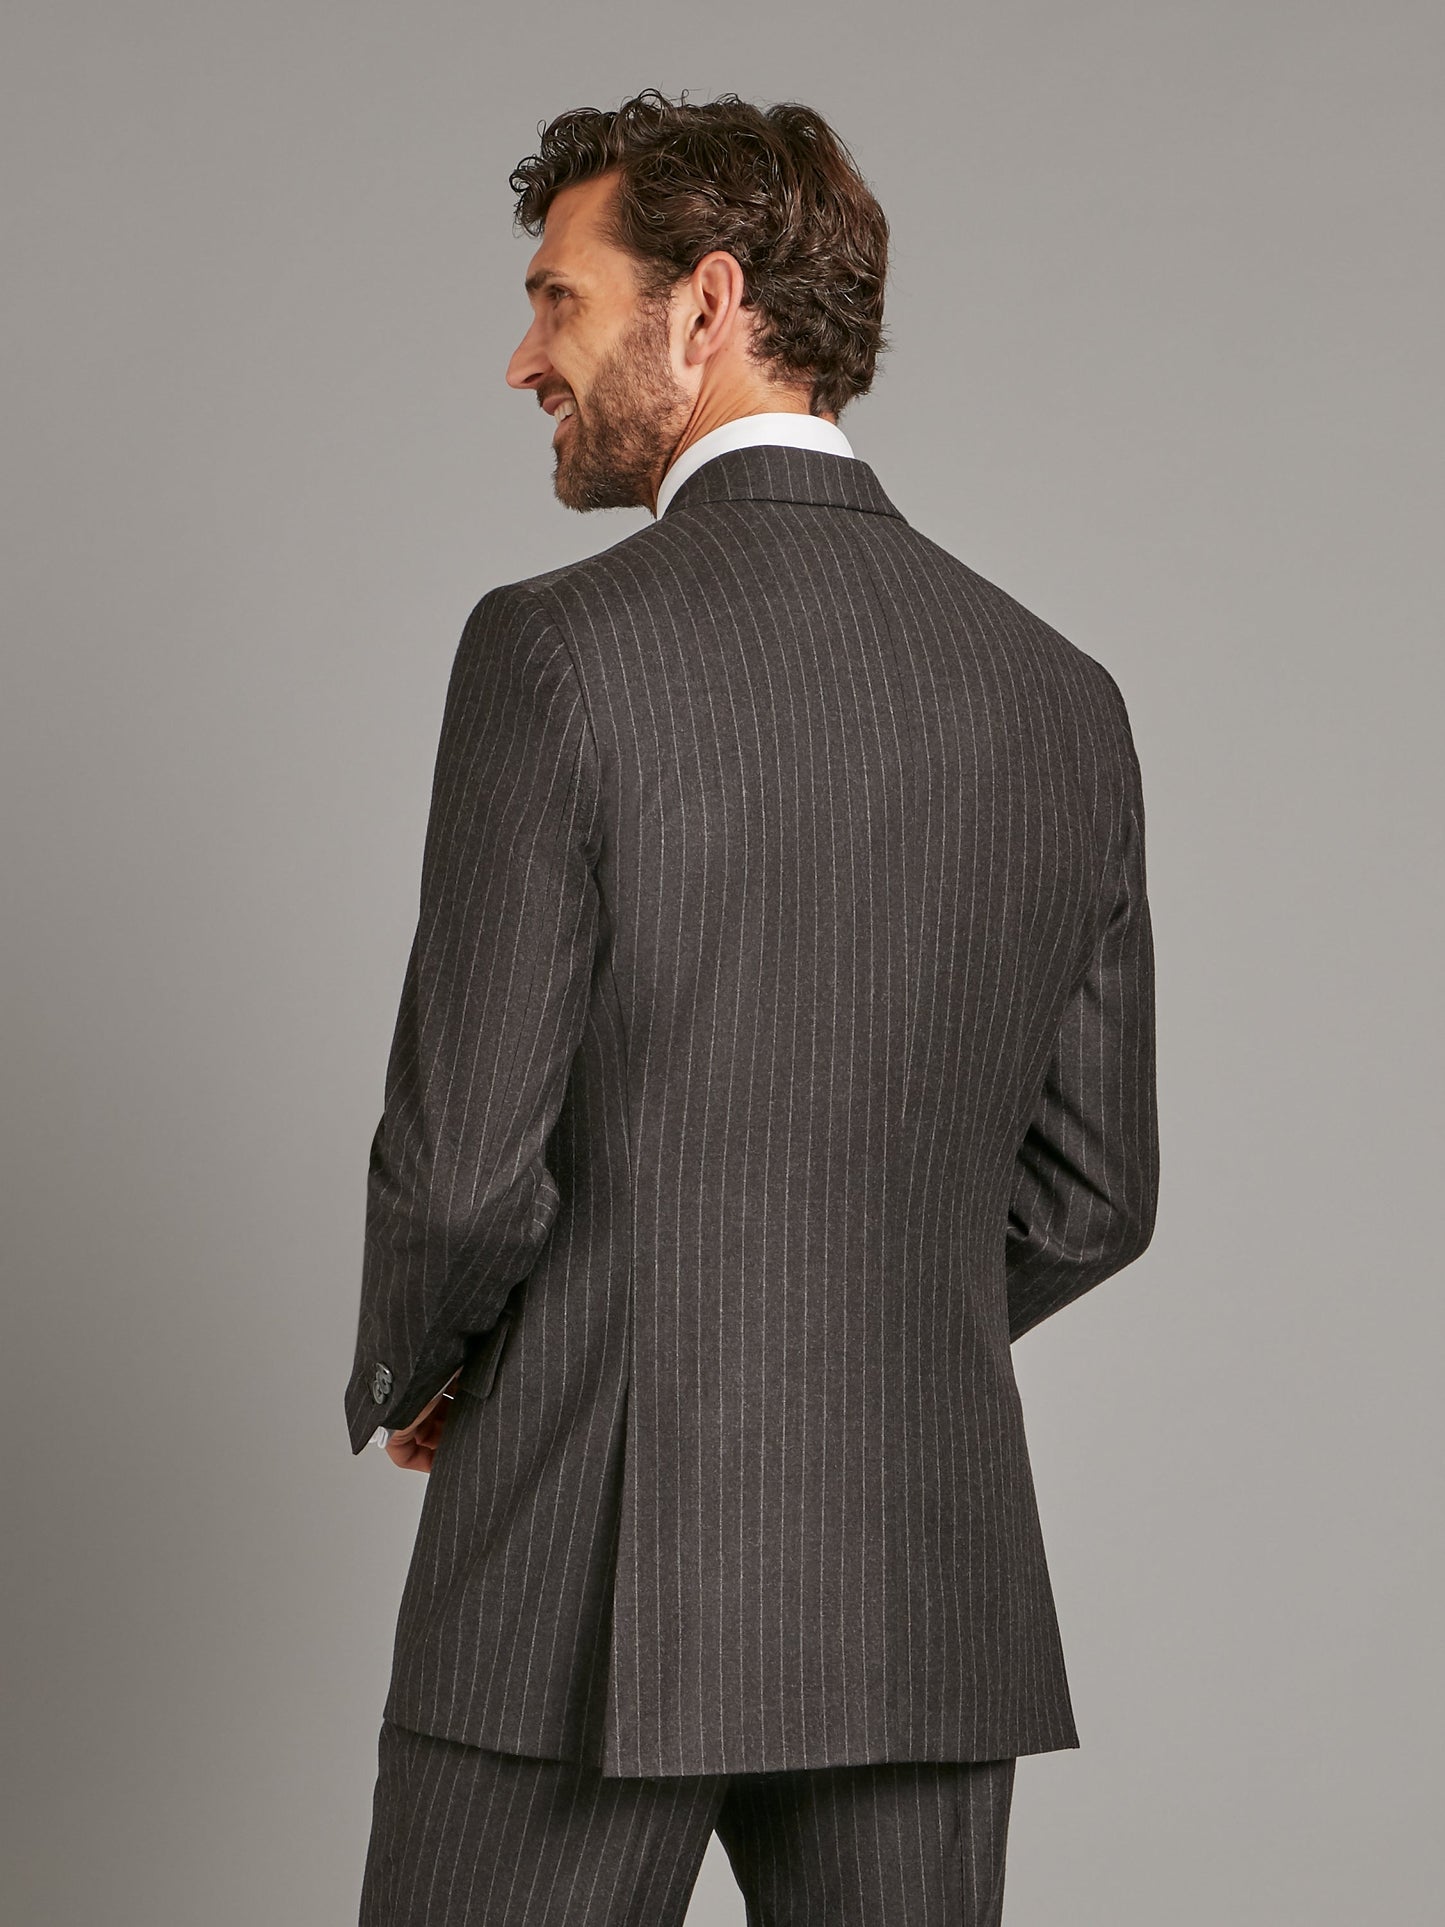 cadogan suit flannel chalk stripe charcoal 3